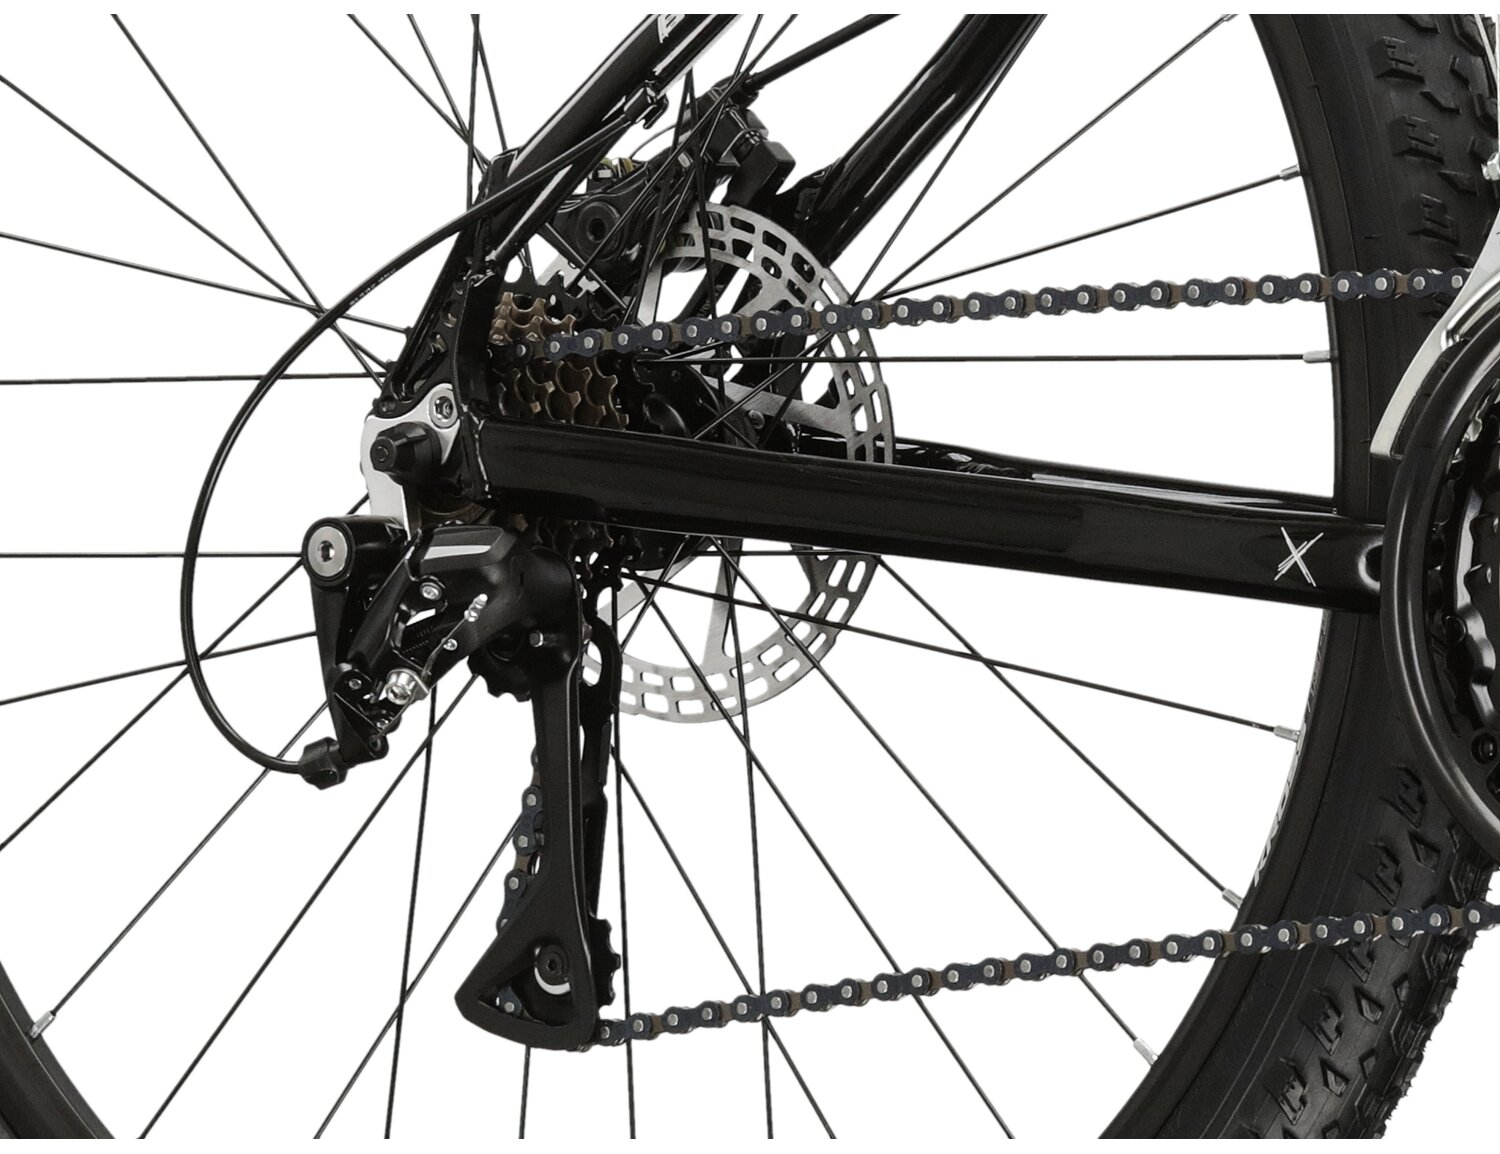  Tylna siedmiobiegowa przerzutka Shimano Acera M3020 oraz mechaniczne hamulce tarczowe w rowerze górskim MTB KROSS Berg JR 2.0 